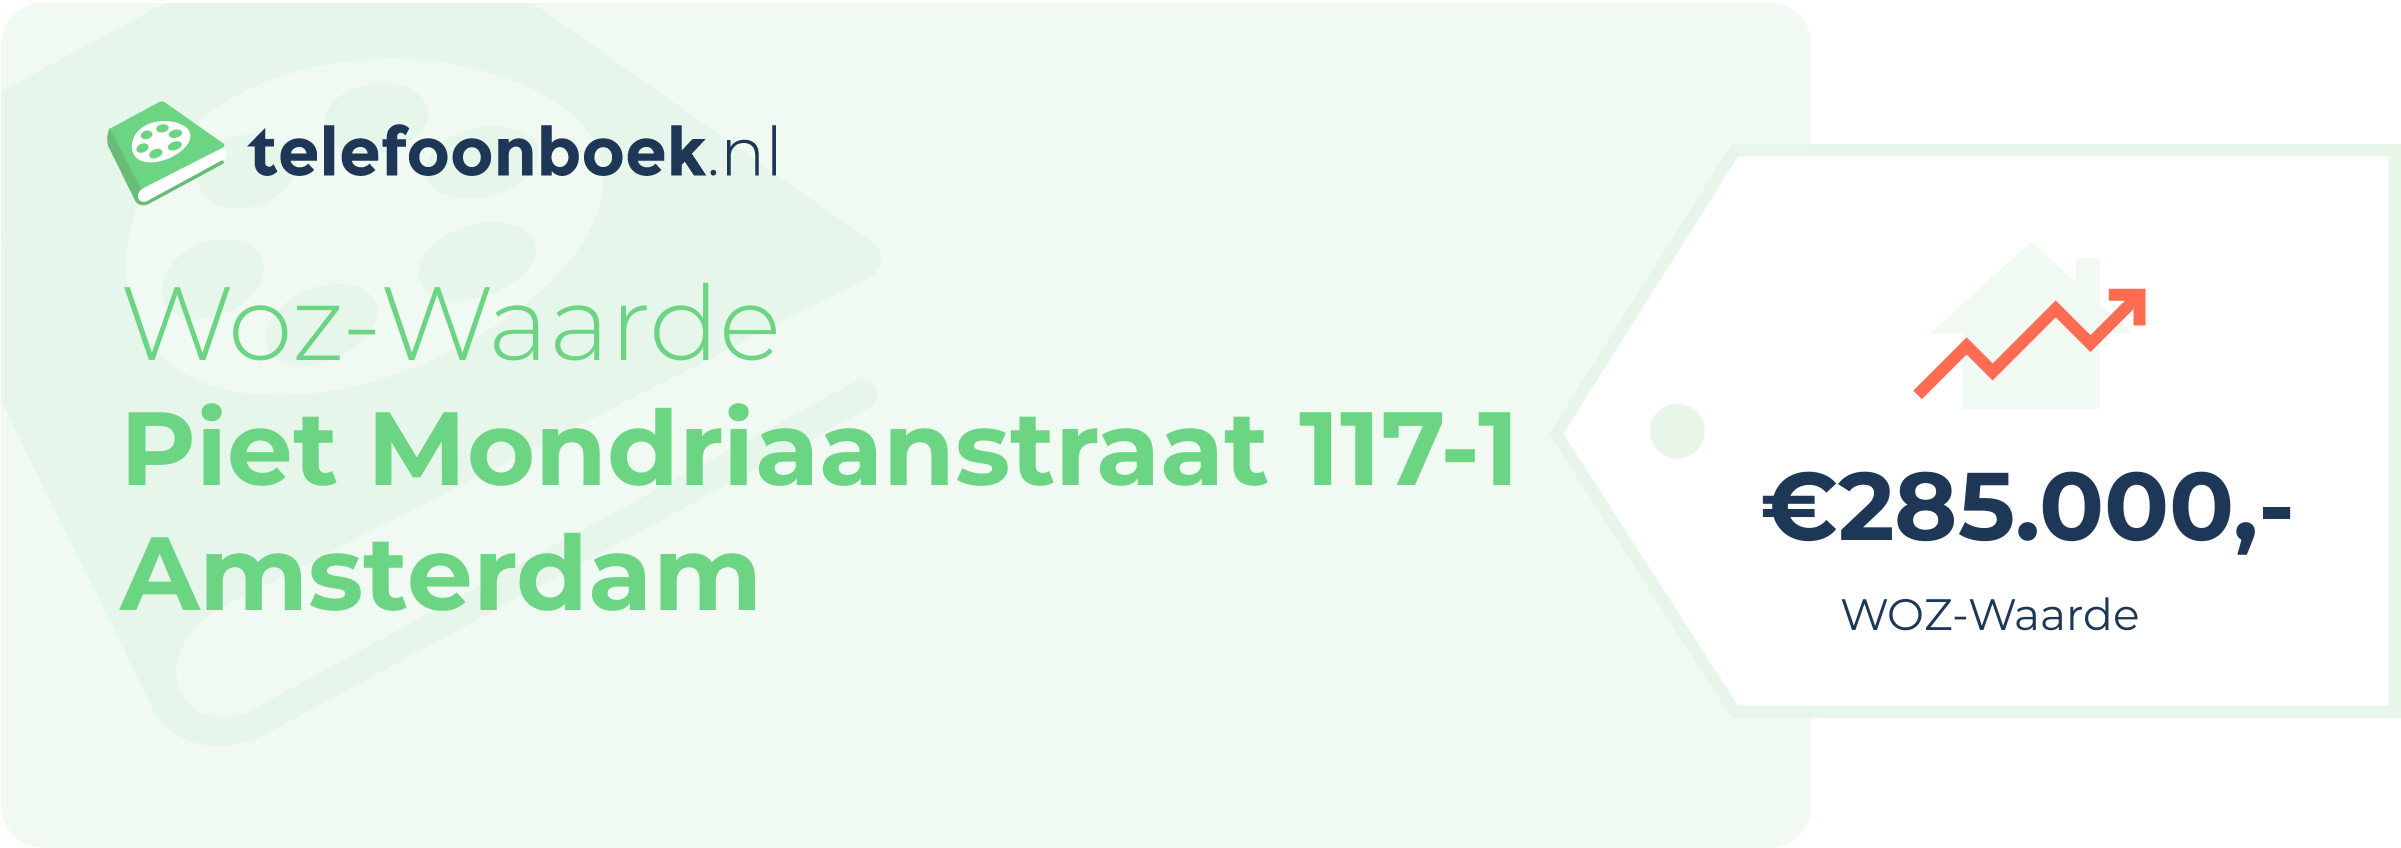 WOZ-waarde Piet Mondriaanstraat 117-1 Amsterdam